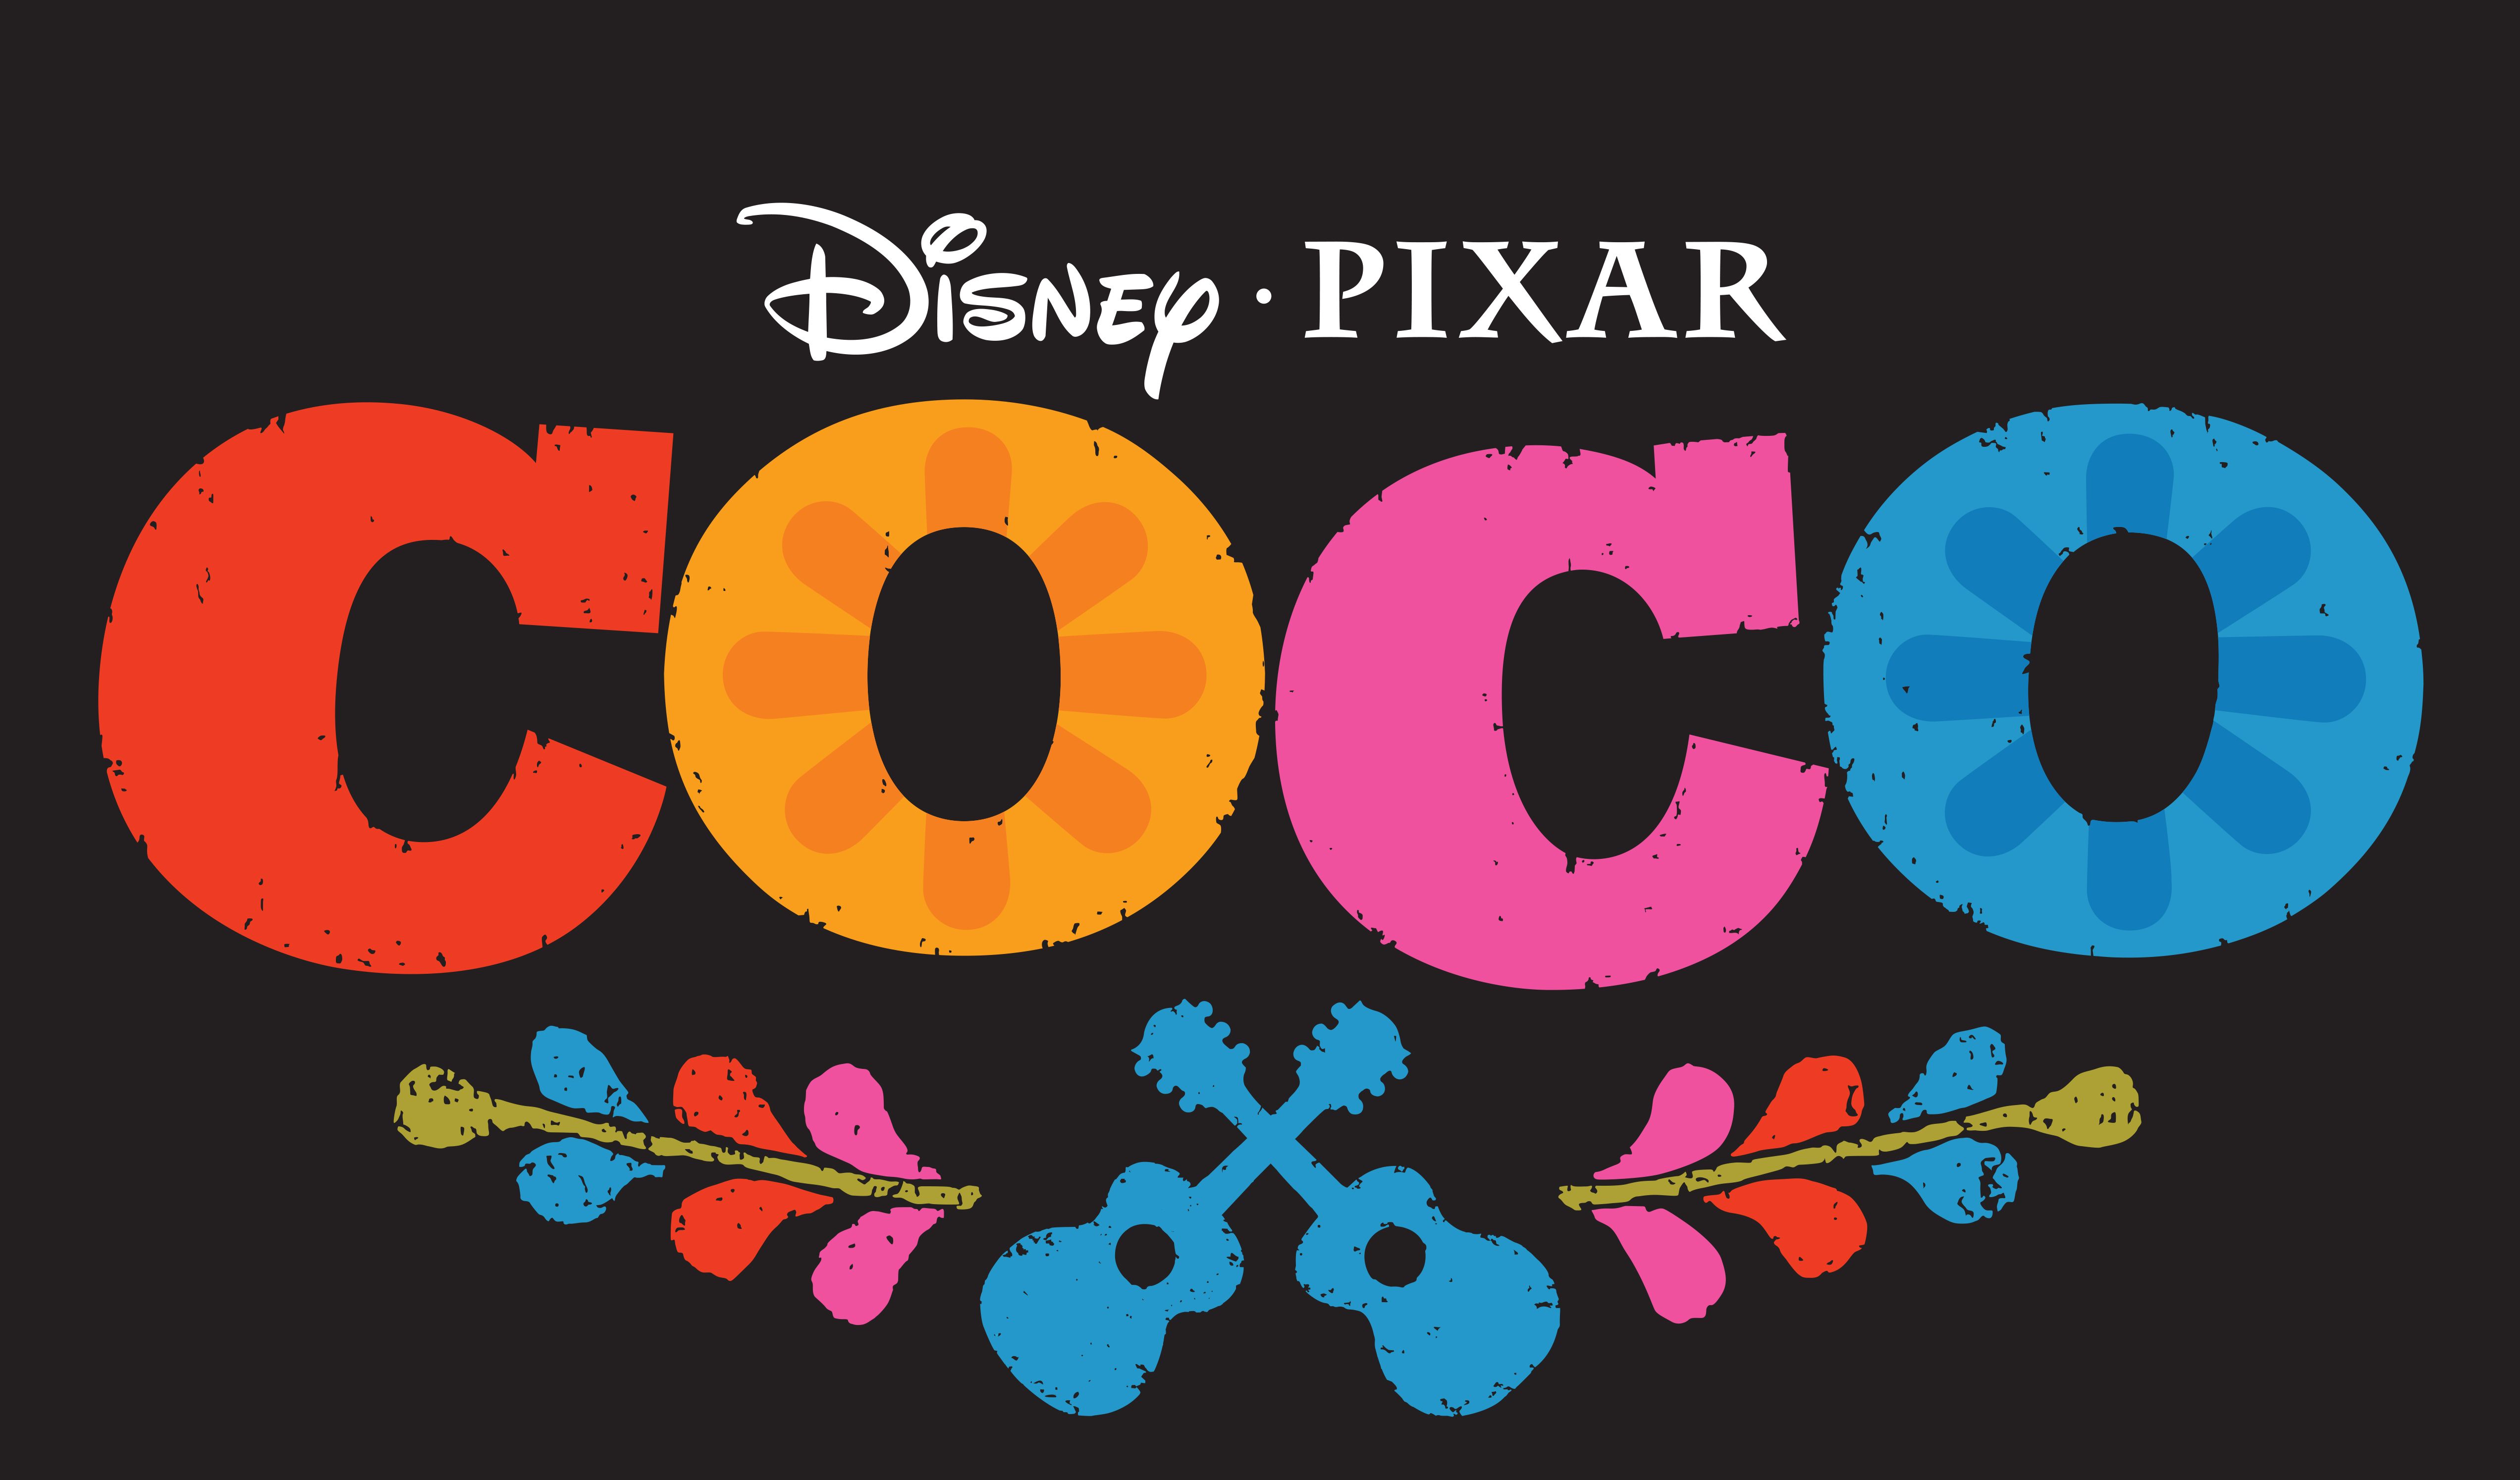 Coco di Pixar renderà omagiu à l'artista icònica Frida Kahlo